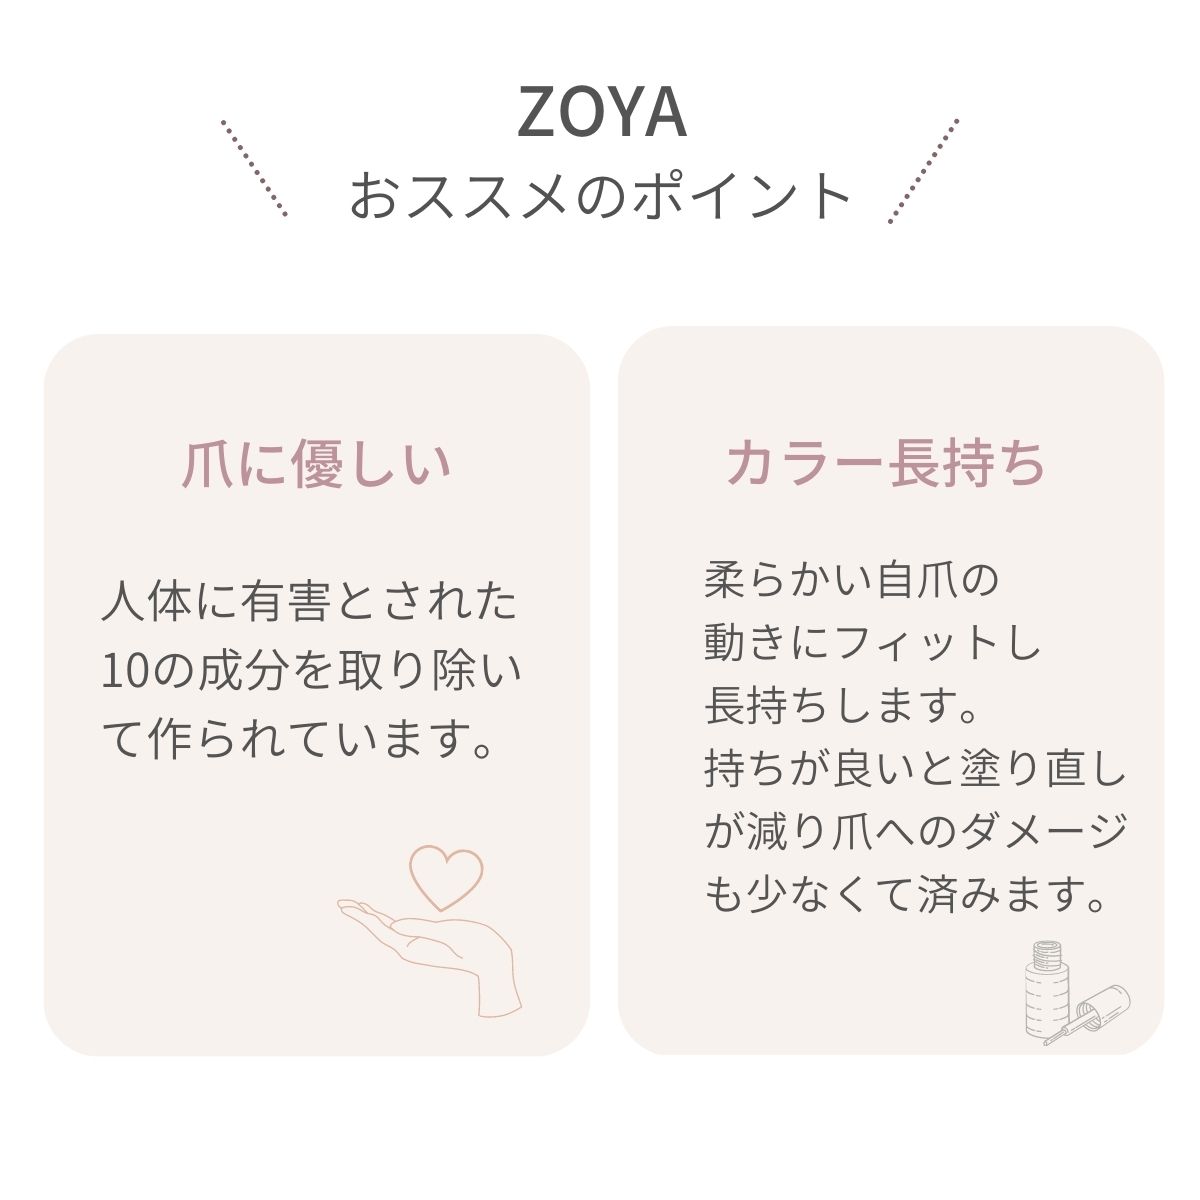 ZOYAの説明